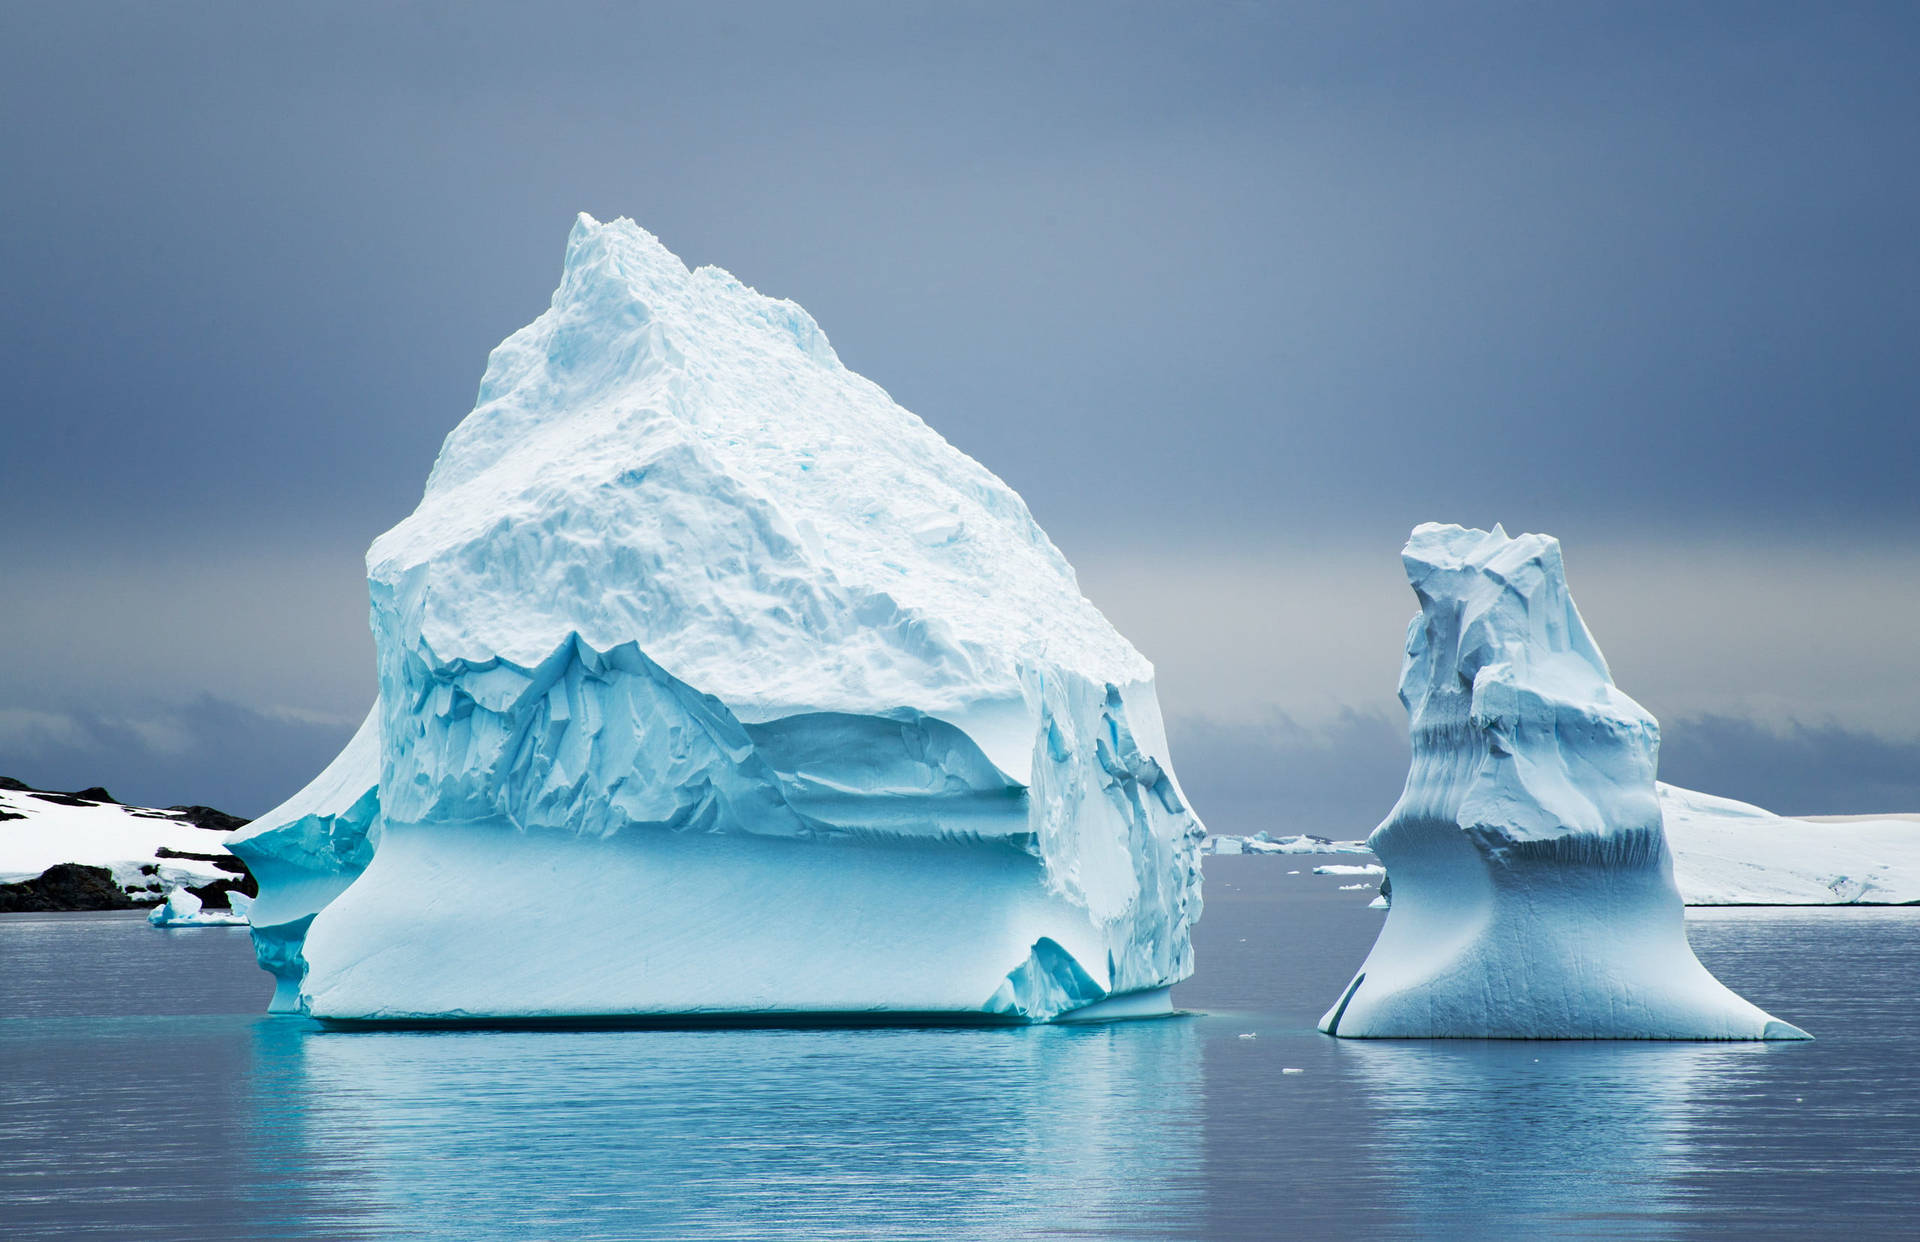 Massive Iceberg With Freezing Temperature Background